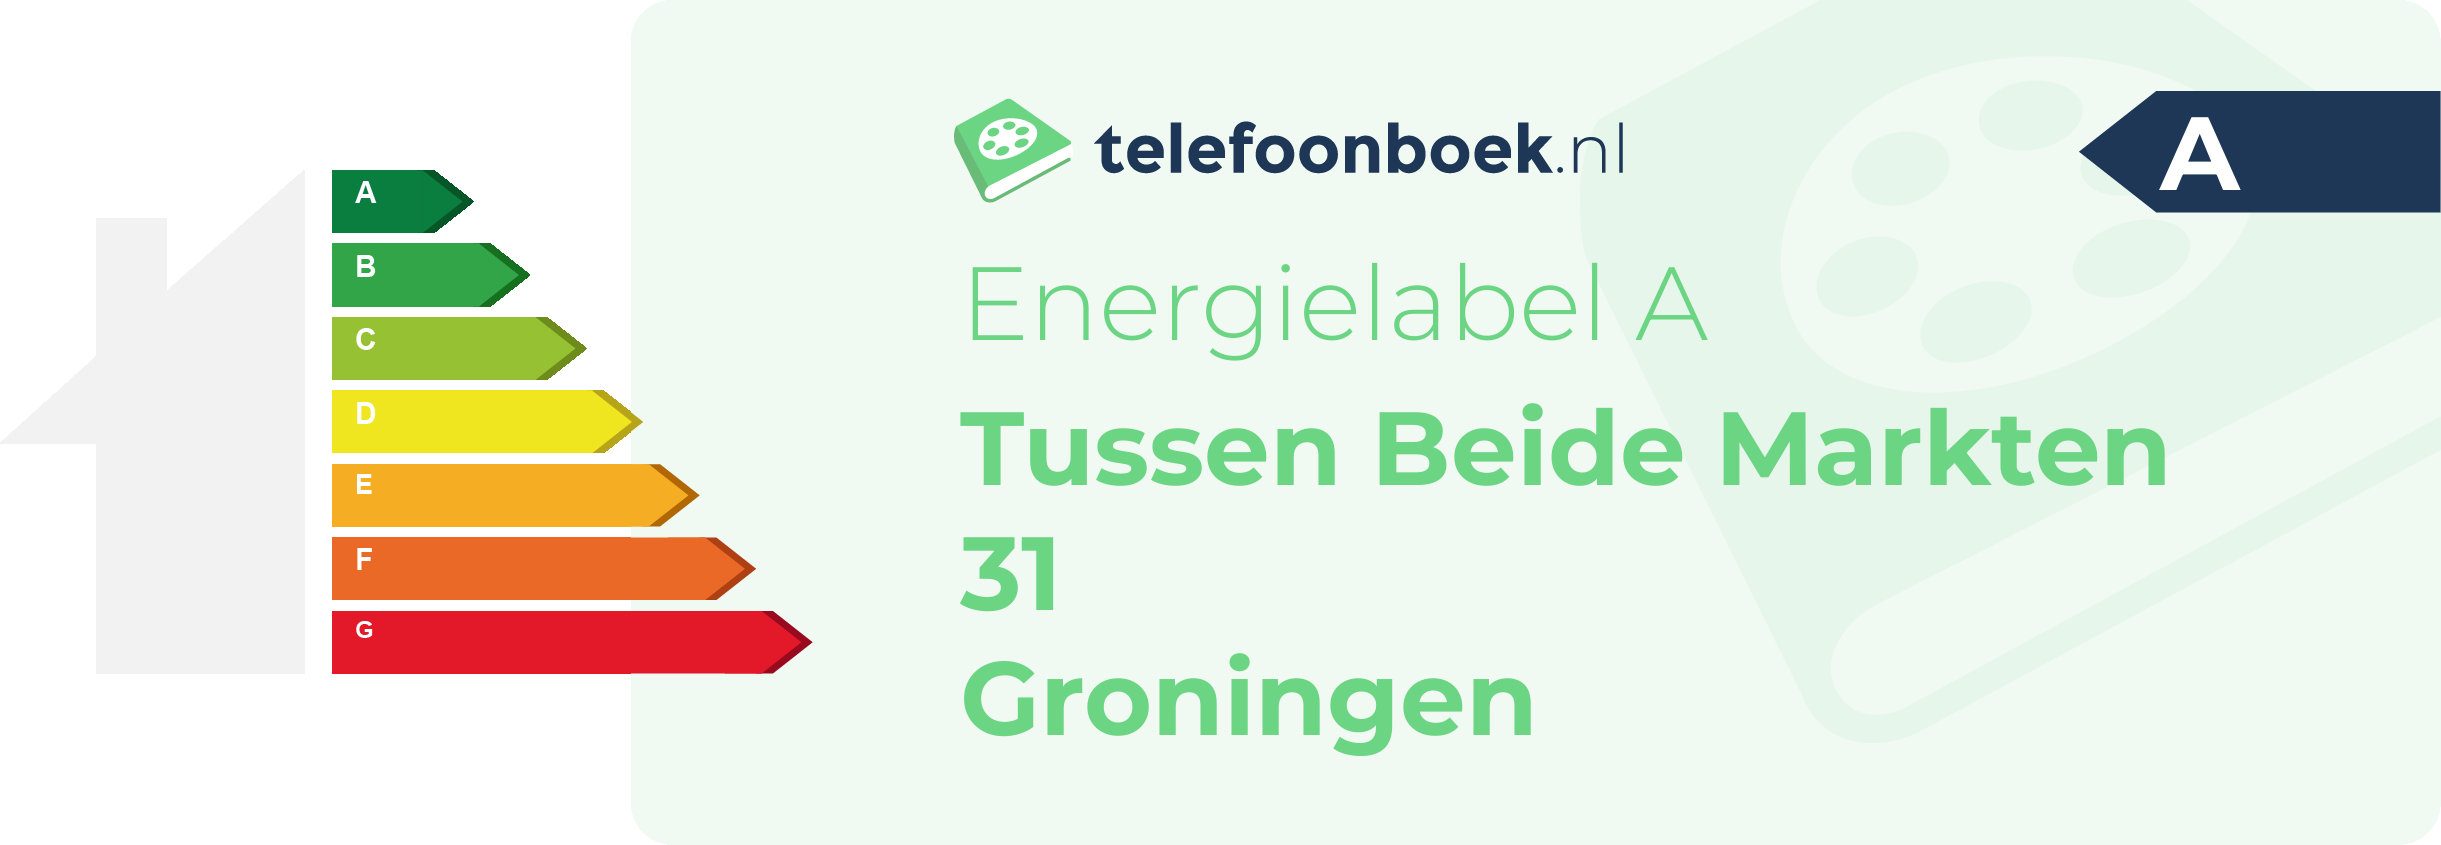 Energielabel Tussen Beide Markten 31 Groningen